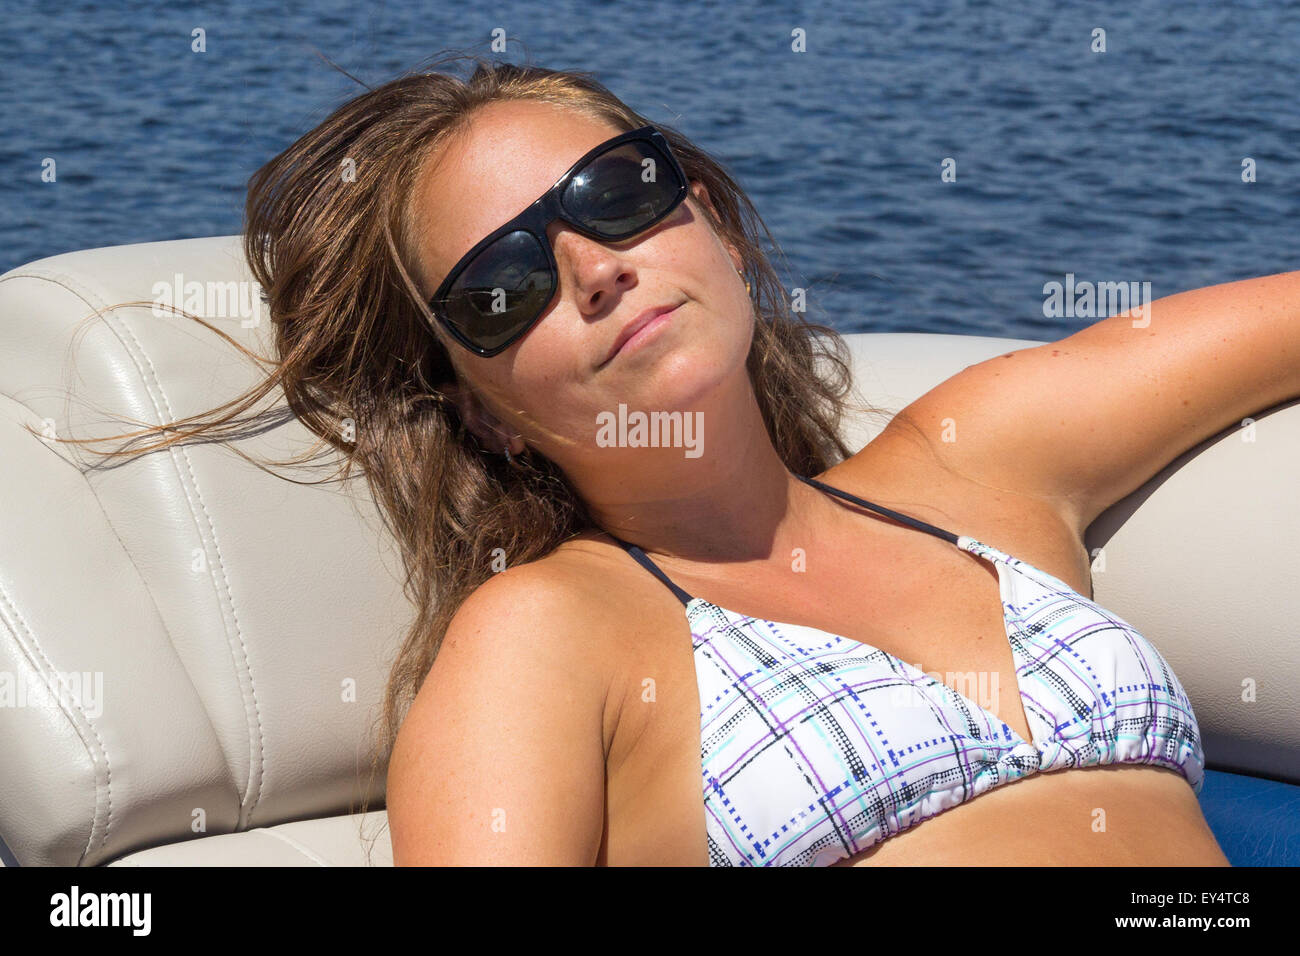 Frau Sonnenbaden auf einem Boot Stockfoto